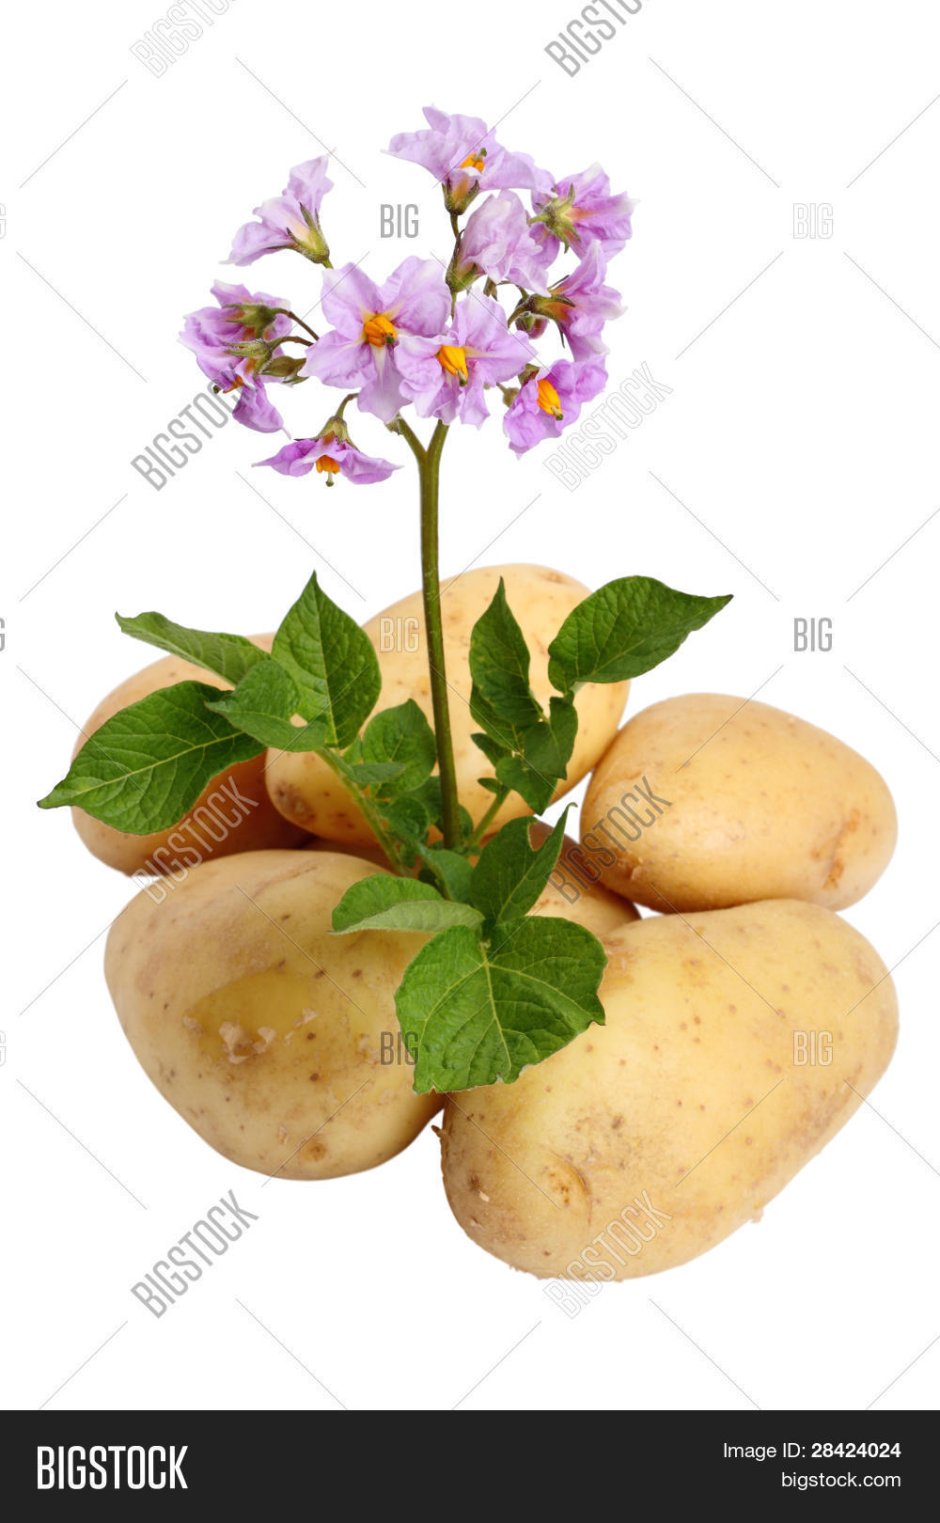 Цветочки на картошке